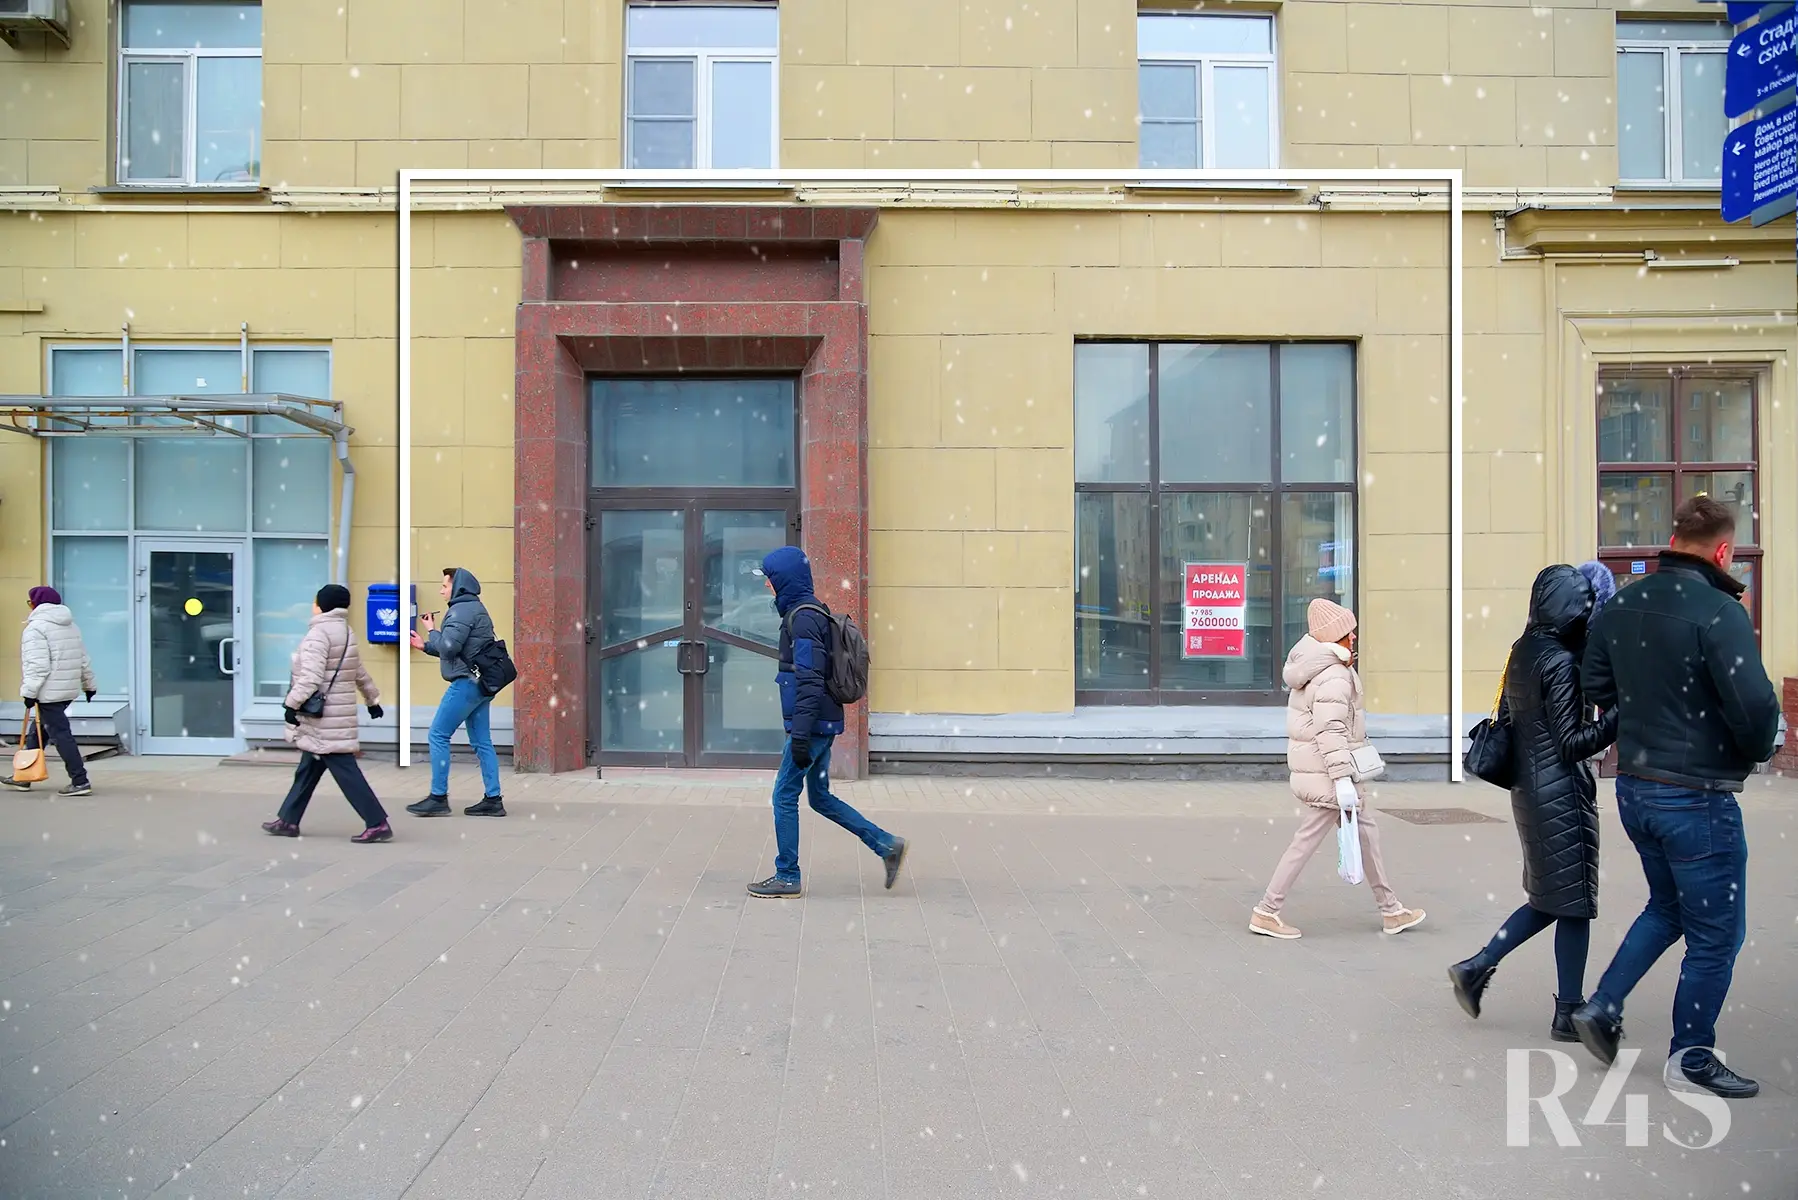 Аренда торгового помещения площадью 86.5 м2 в Москве: Ленинградский проспект, 69с1 R4S | Realty4Sale